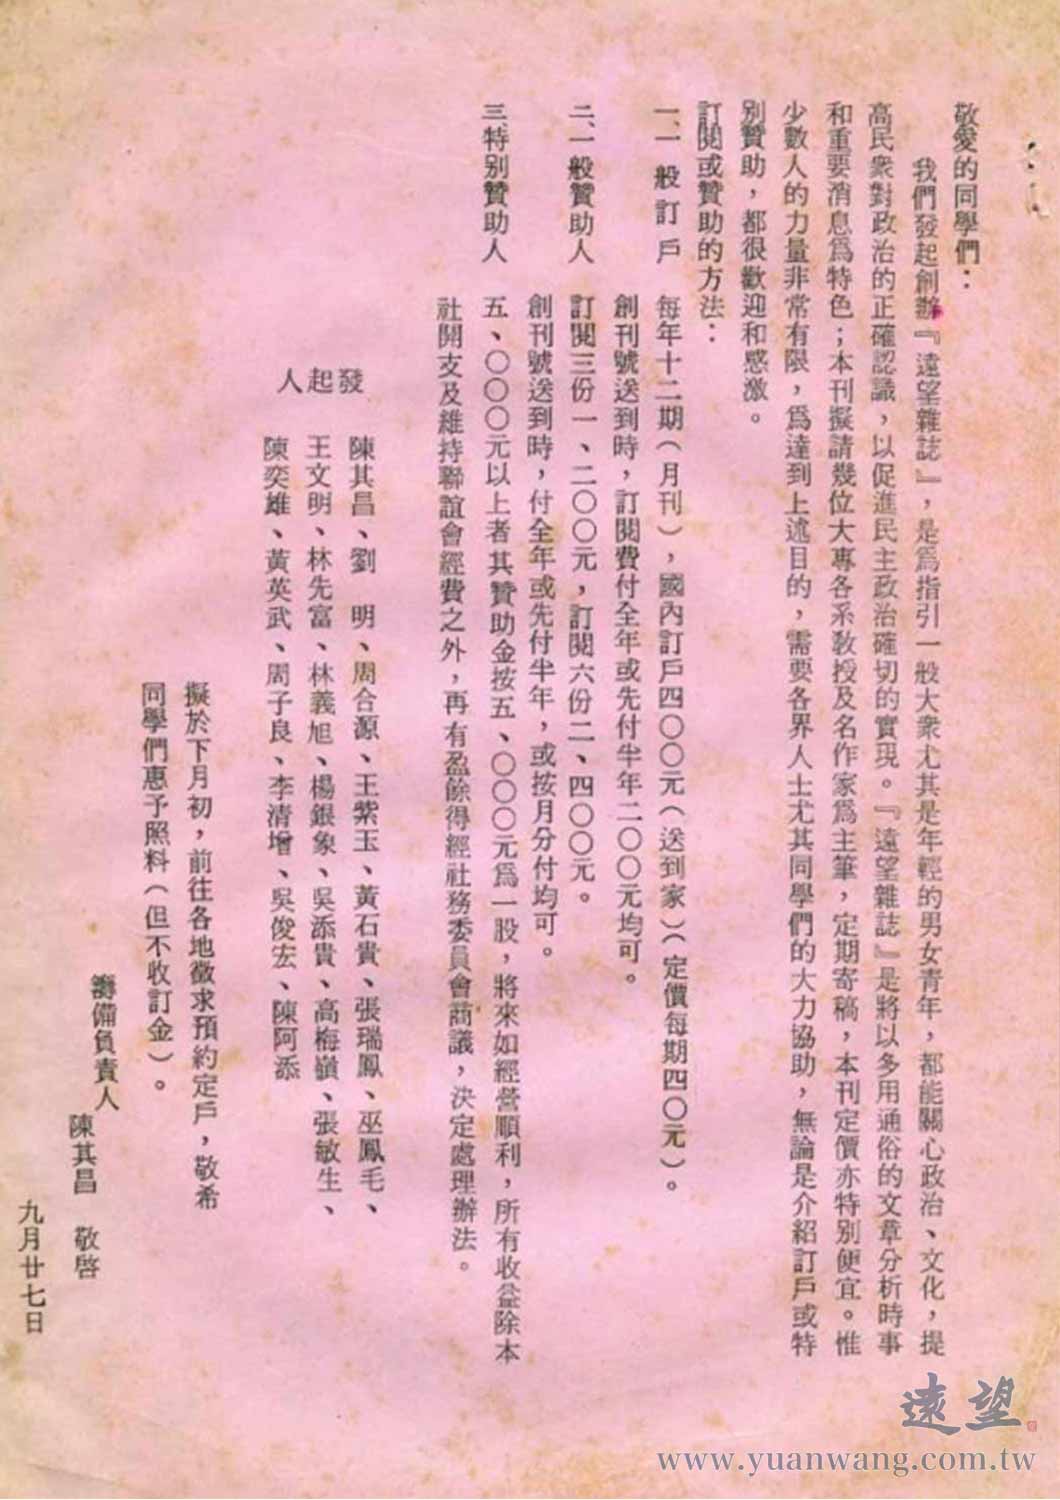 陳其昌先生發給「老同學」（政治犯難友）的公開信